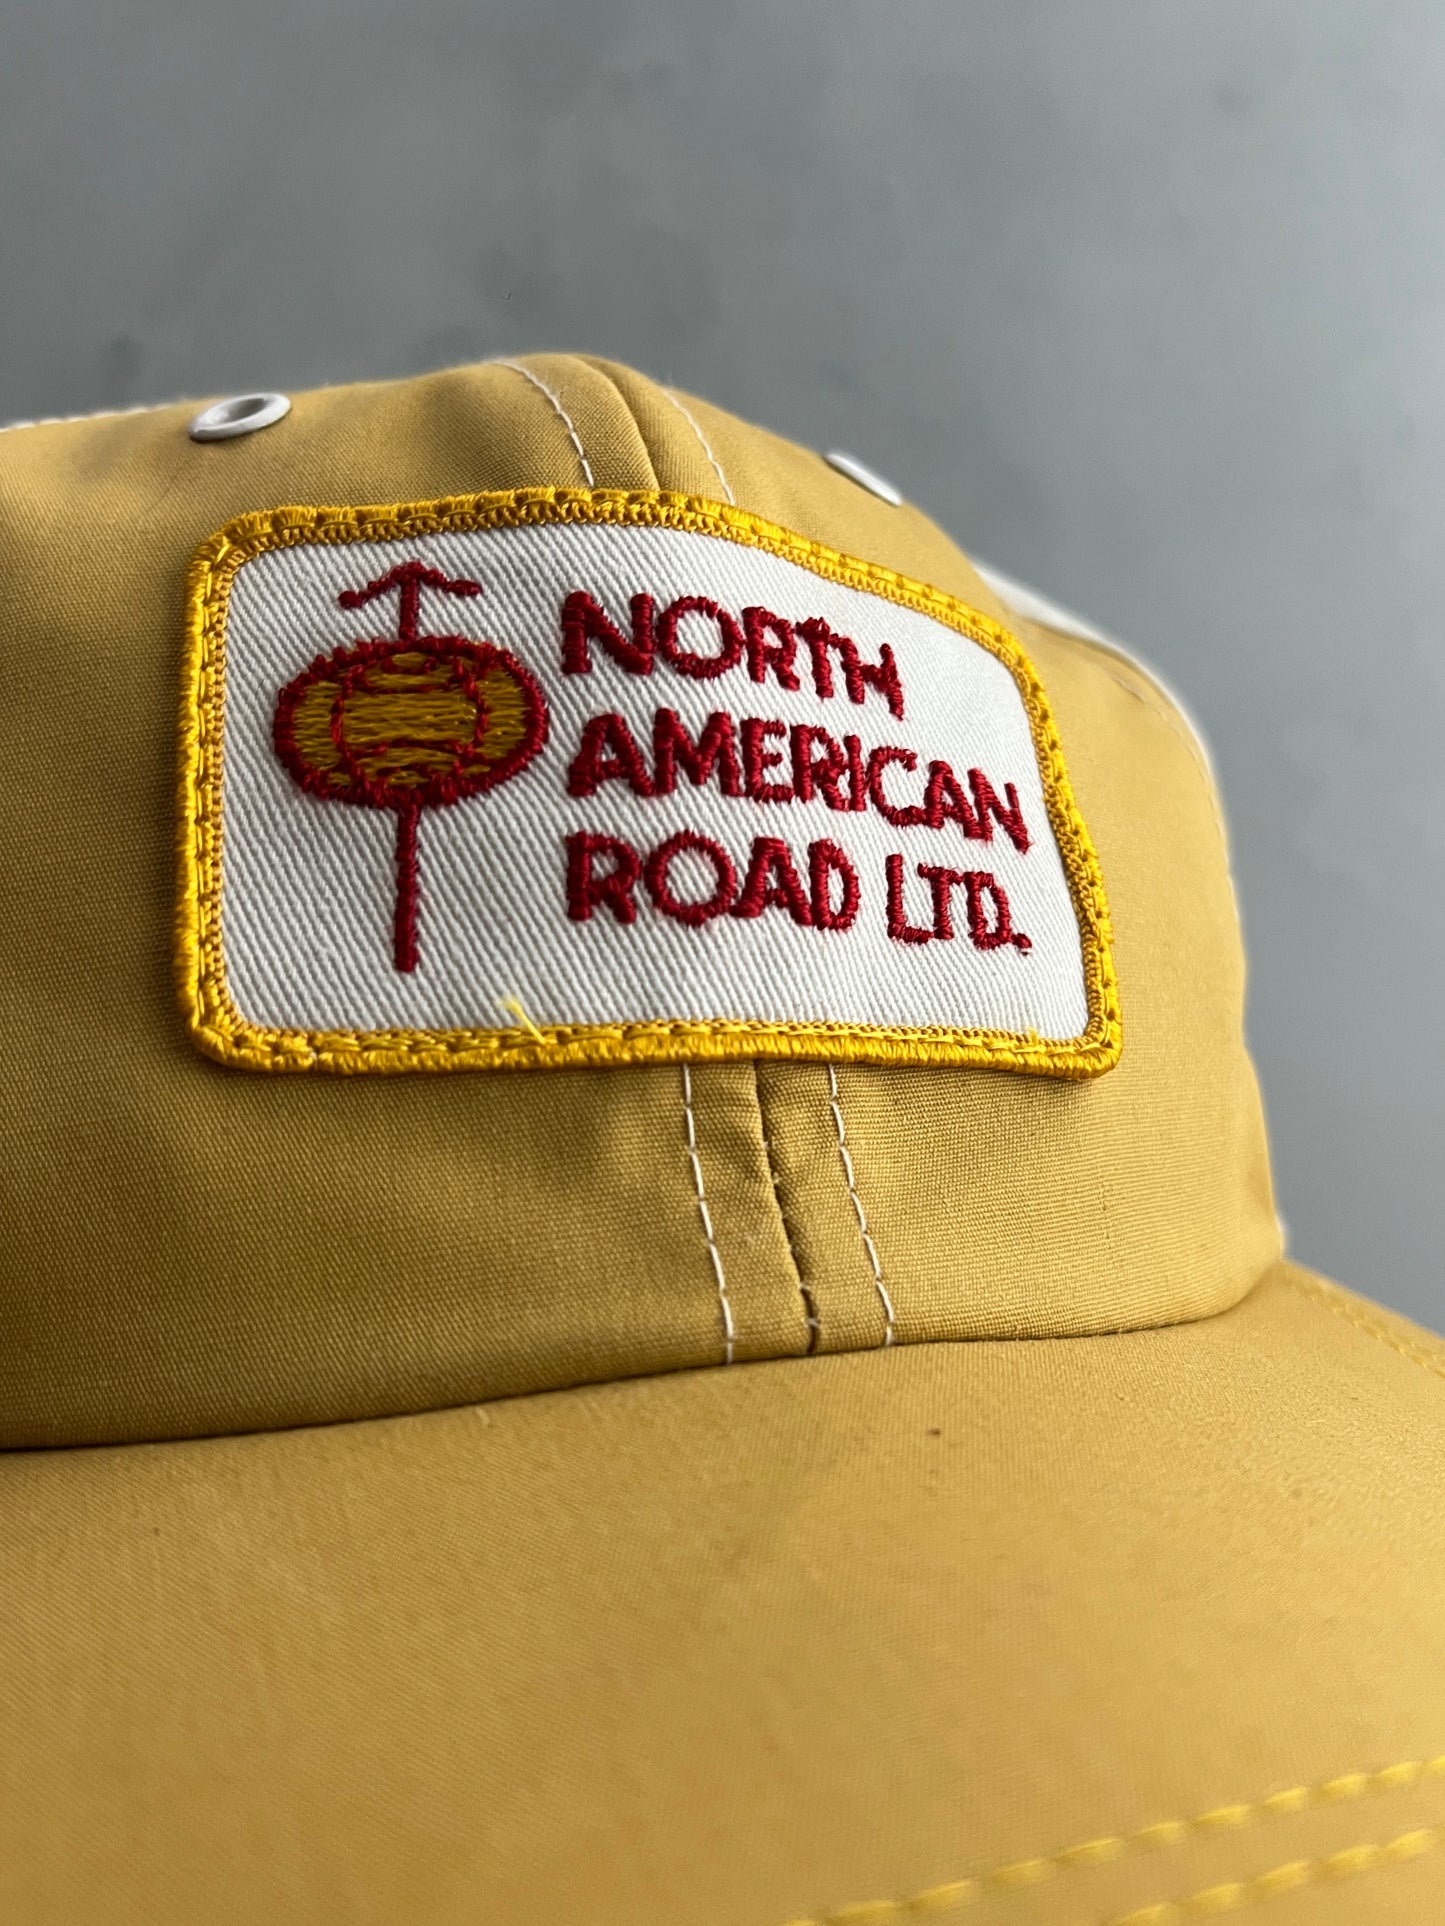 North American Road Ltd. Trucker Cap